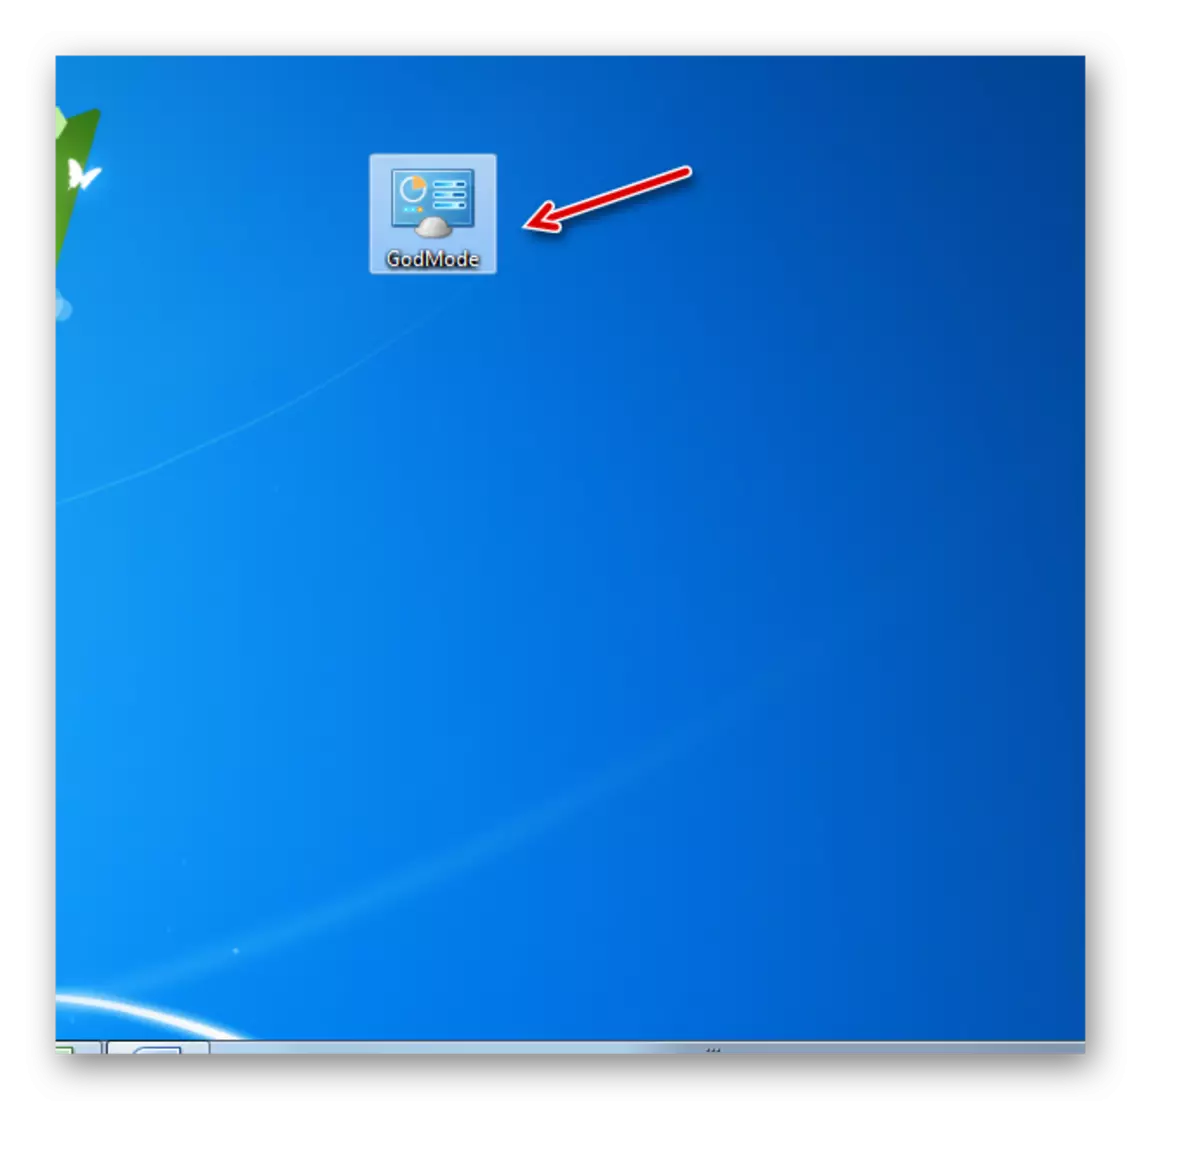 Windows 7 இல் டெஸ்க்டாப்பில் உருவாக்கப்பட்ட கடவுளுடைய பயன்முறையில் செல்ல கடவுள் லேபிள் லேபிள்